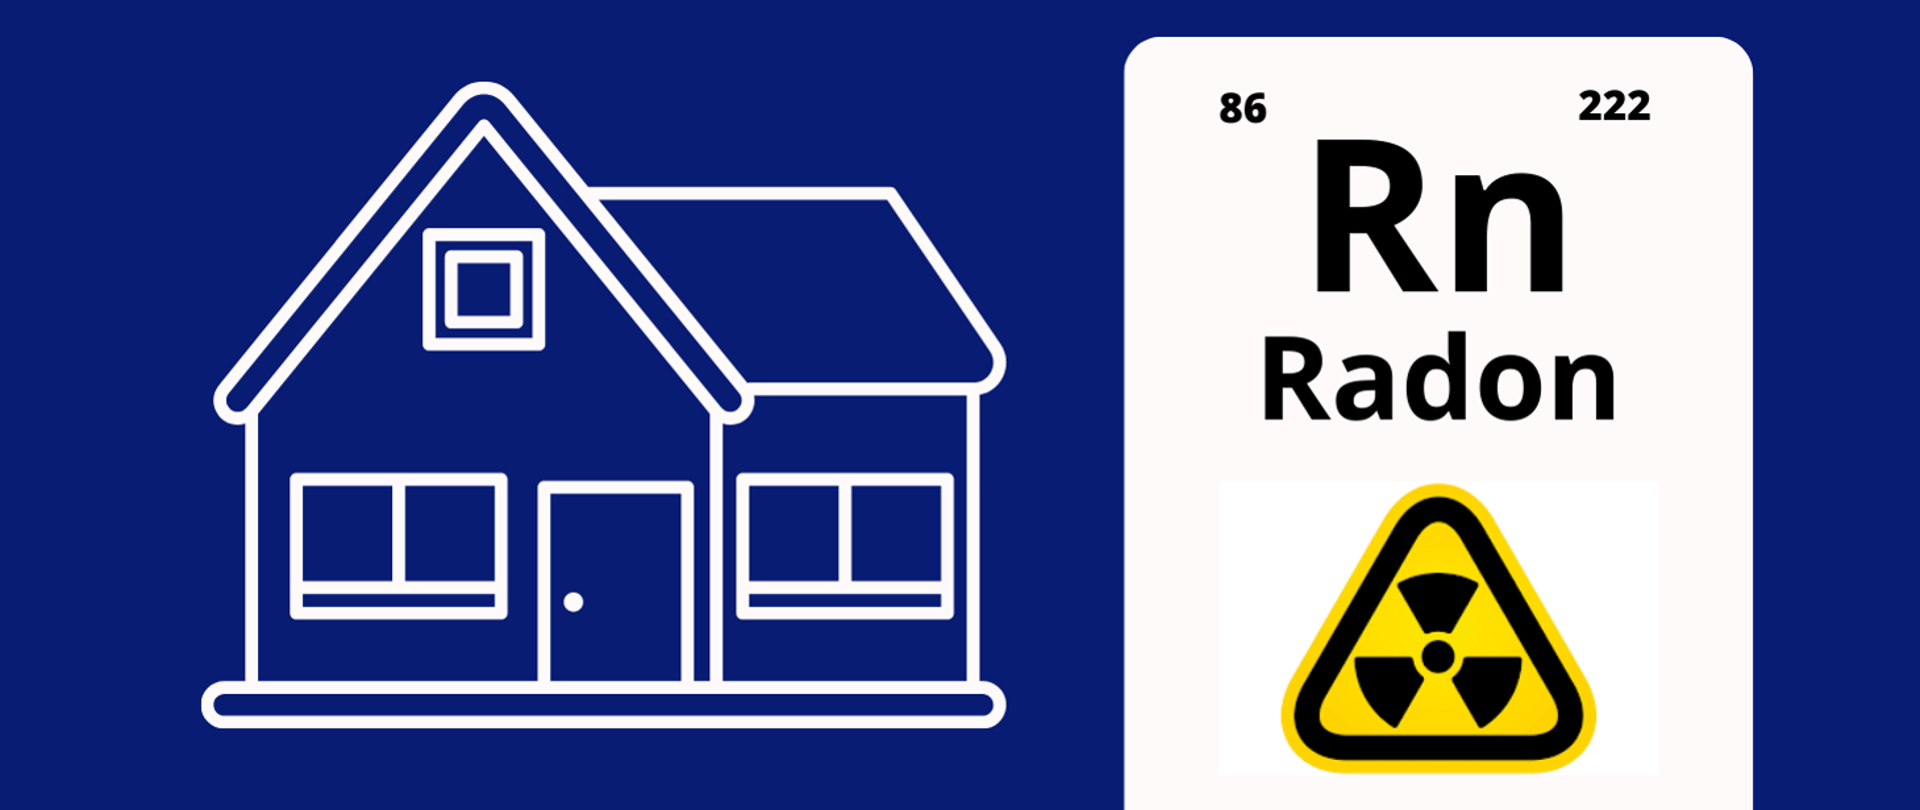 niebieski baner z zarysem domu po lewej, po prawej symbol Radonu Rn, jego liczba atomowa:86 i masa atomowa:222 a po nim żółty znak ostrzegający przed promieniowaniem (piktogram BHP)
